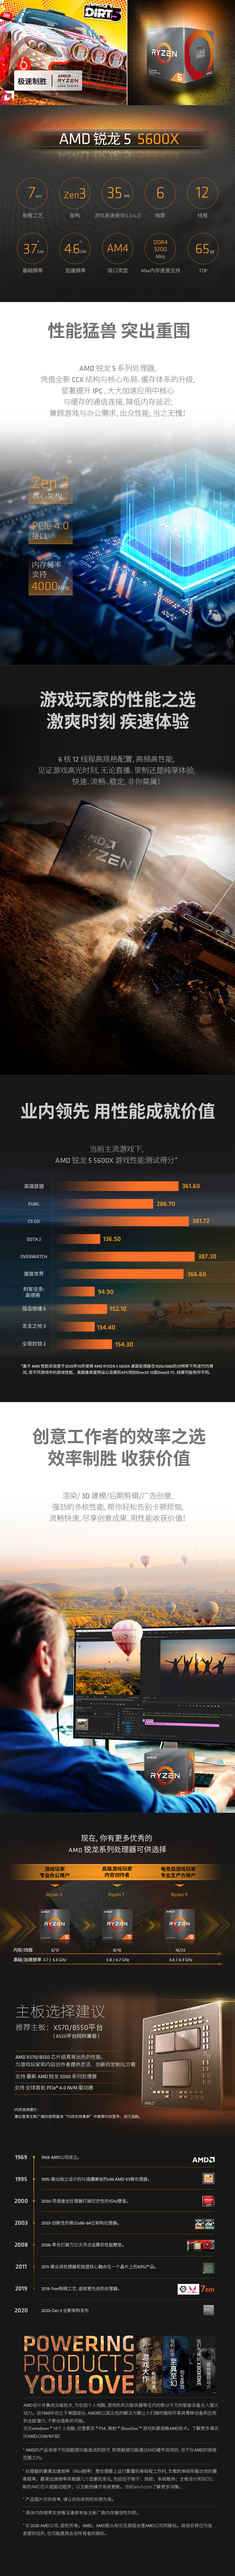 AMD中国电商视觉设计图3